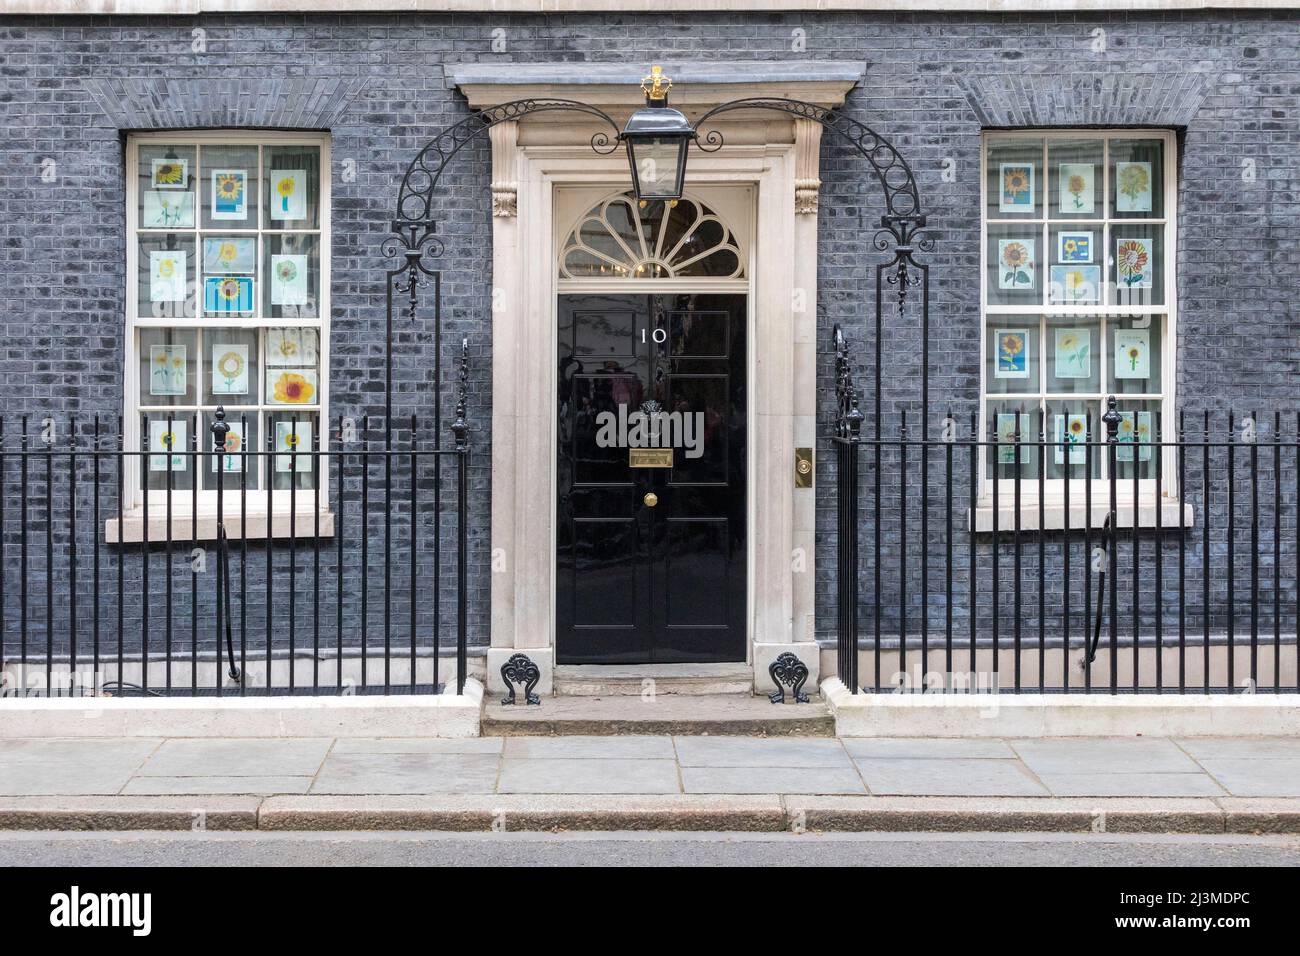 Eine allgemeine Ansicht des Eingangs zur Downing Street Nr. 10 vom Pressestift aus. Bilder aufgenommen am 8.. April 2022. © Belinda Jiao jiao.bilin@gmail.co Stockfoto